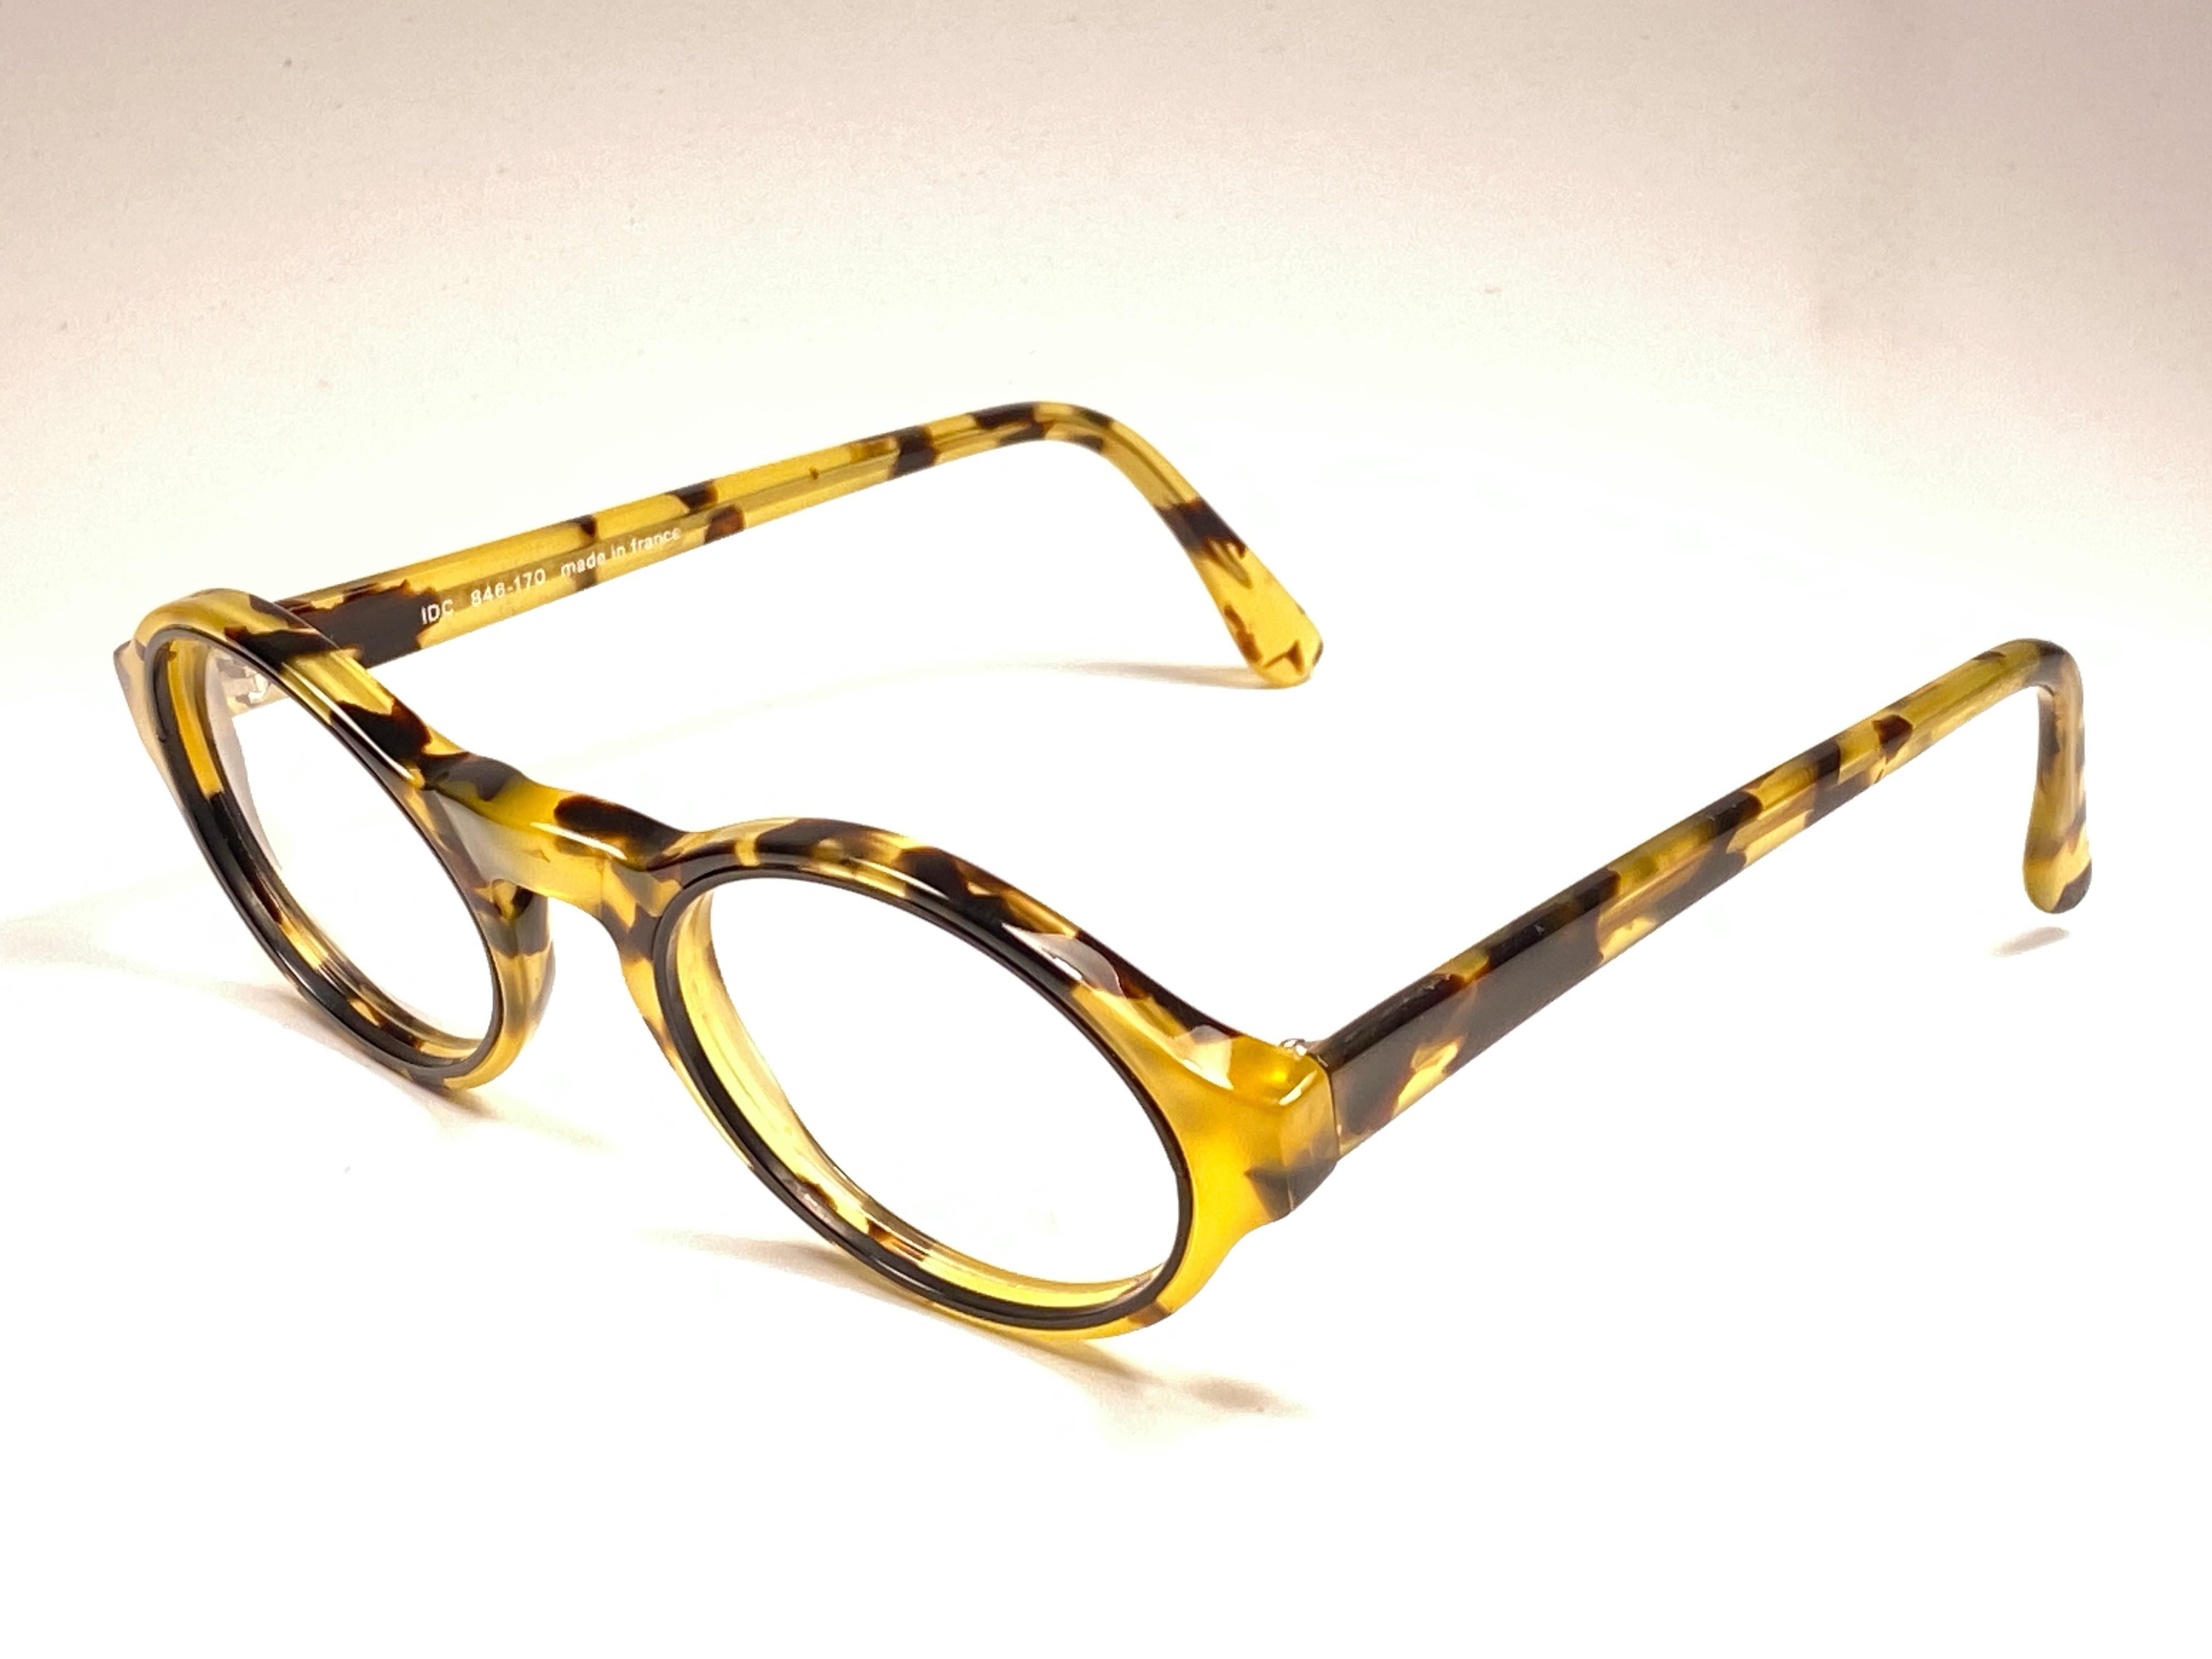 

IDC Pour Marithe Francois Girbaud runde, helle Schildpattbrille, bereit für Ihre Korrekturgläser. 

Dieses Paar könnte aufgrund der Lagerung leichte Gebrauchsspuren aufweisen. 
Hergestellt in Frankreich.

Vorderseite : 14 cm

Linse Höhe : 4